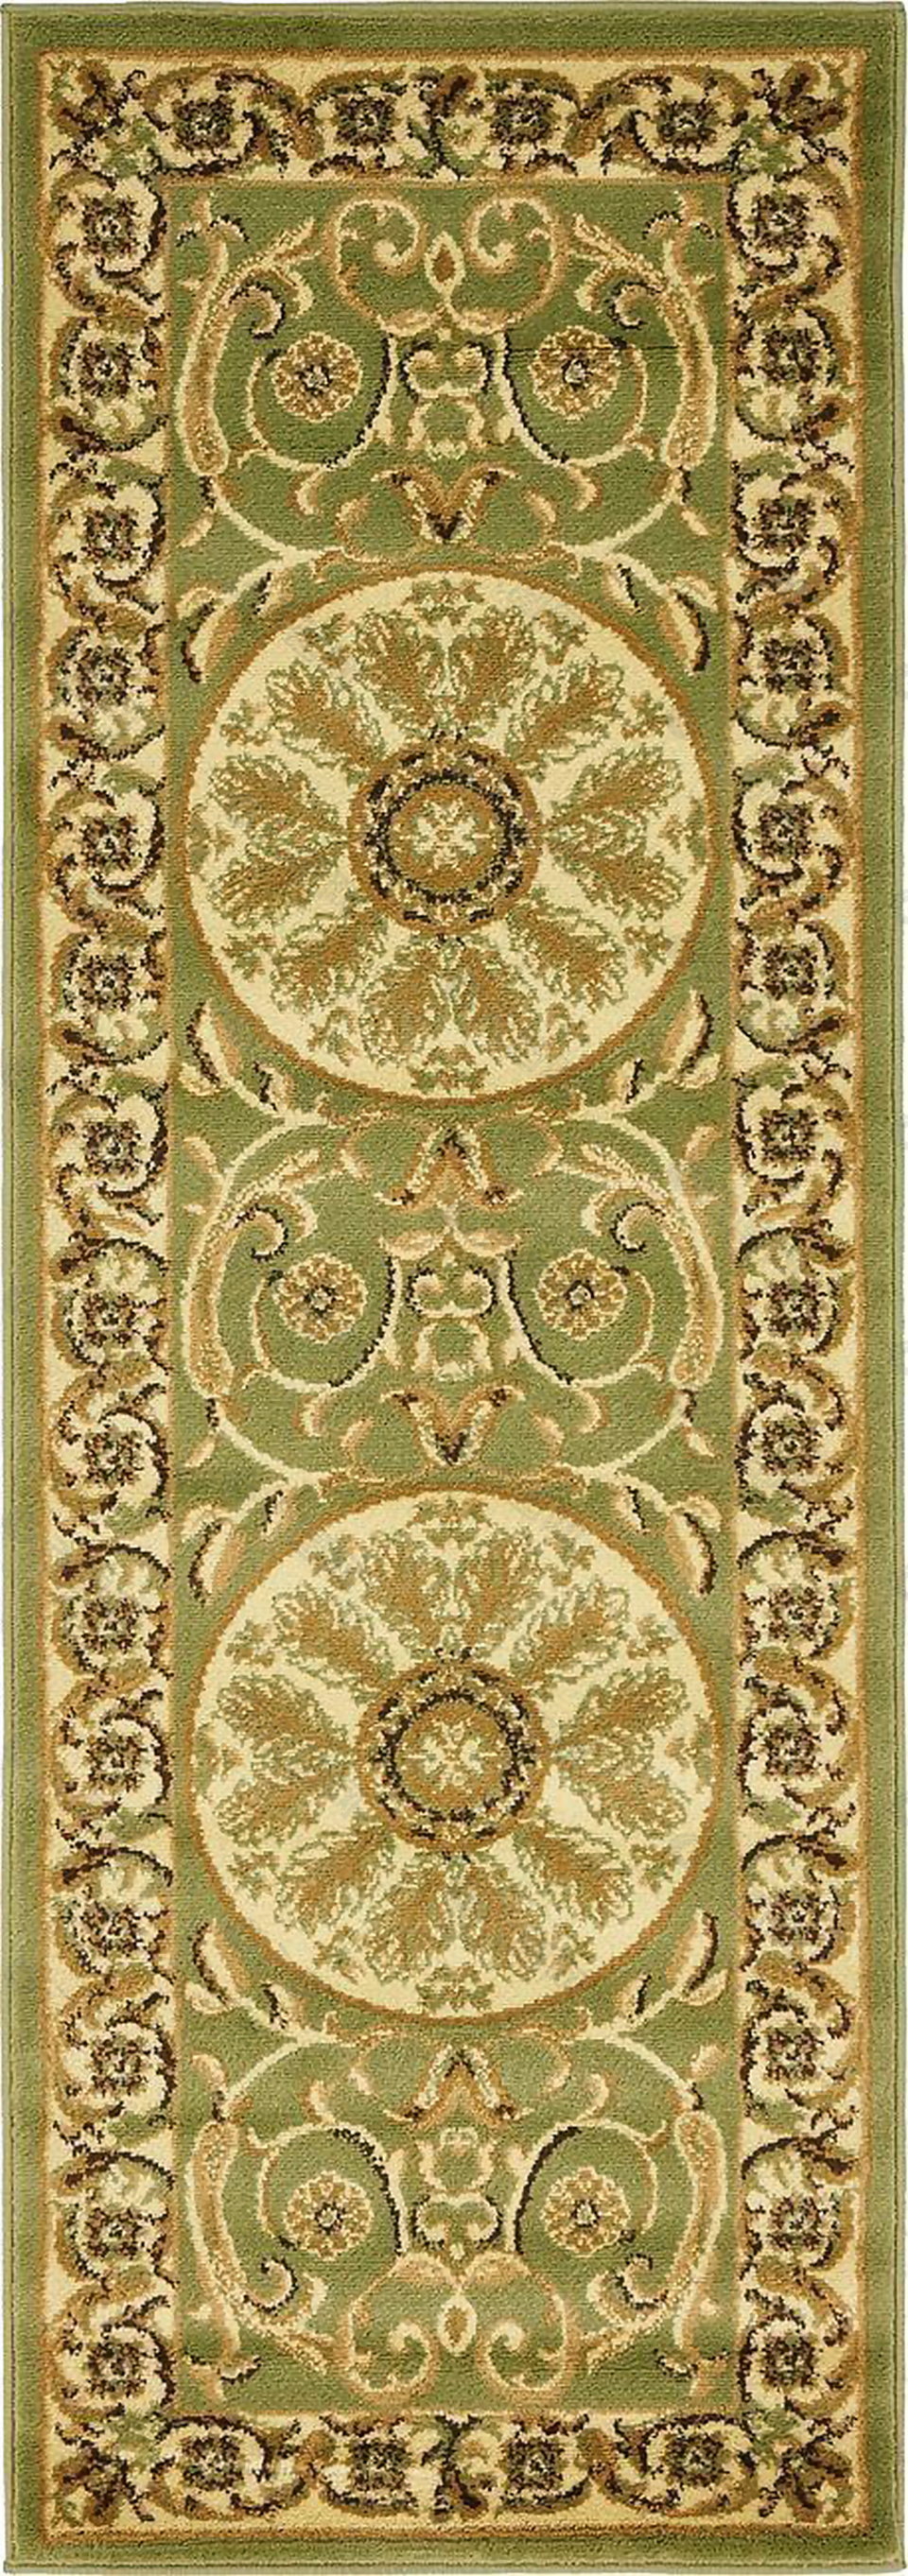 古典经典地毯细纹贴图jpg图片